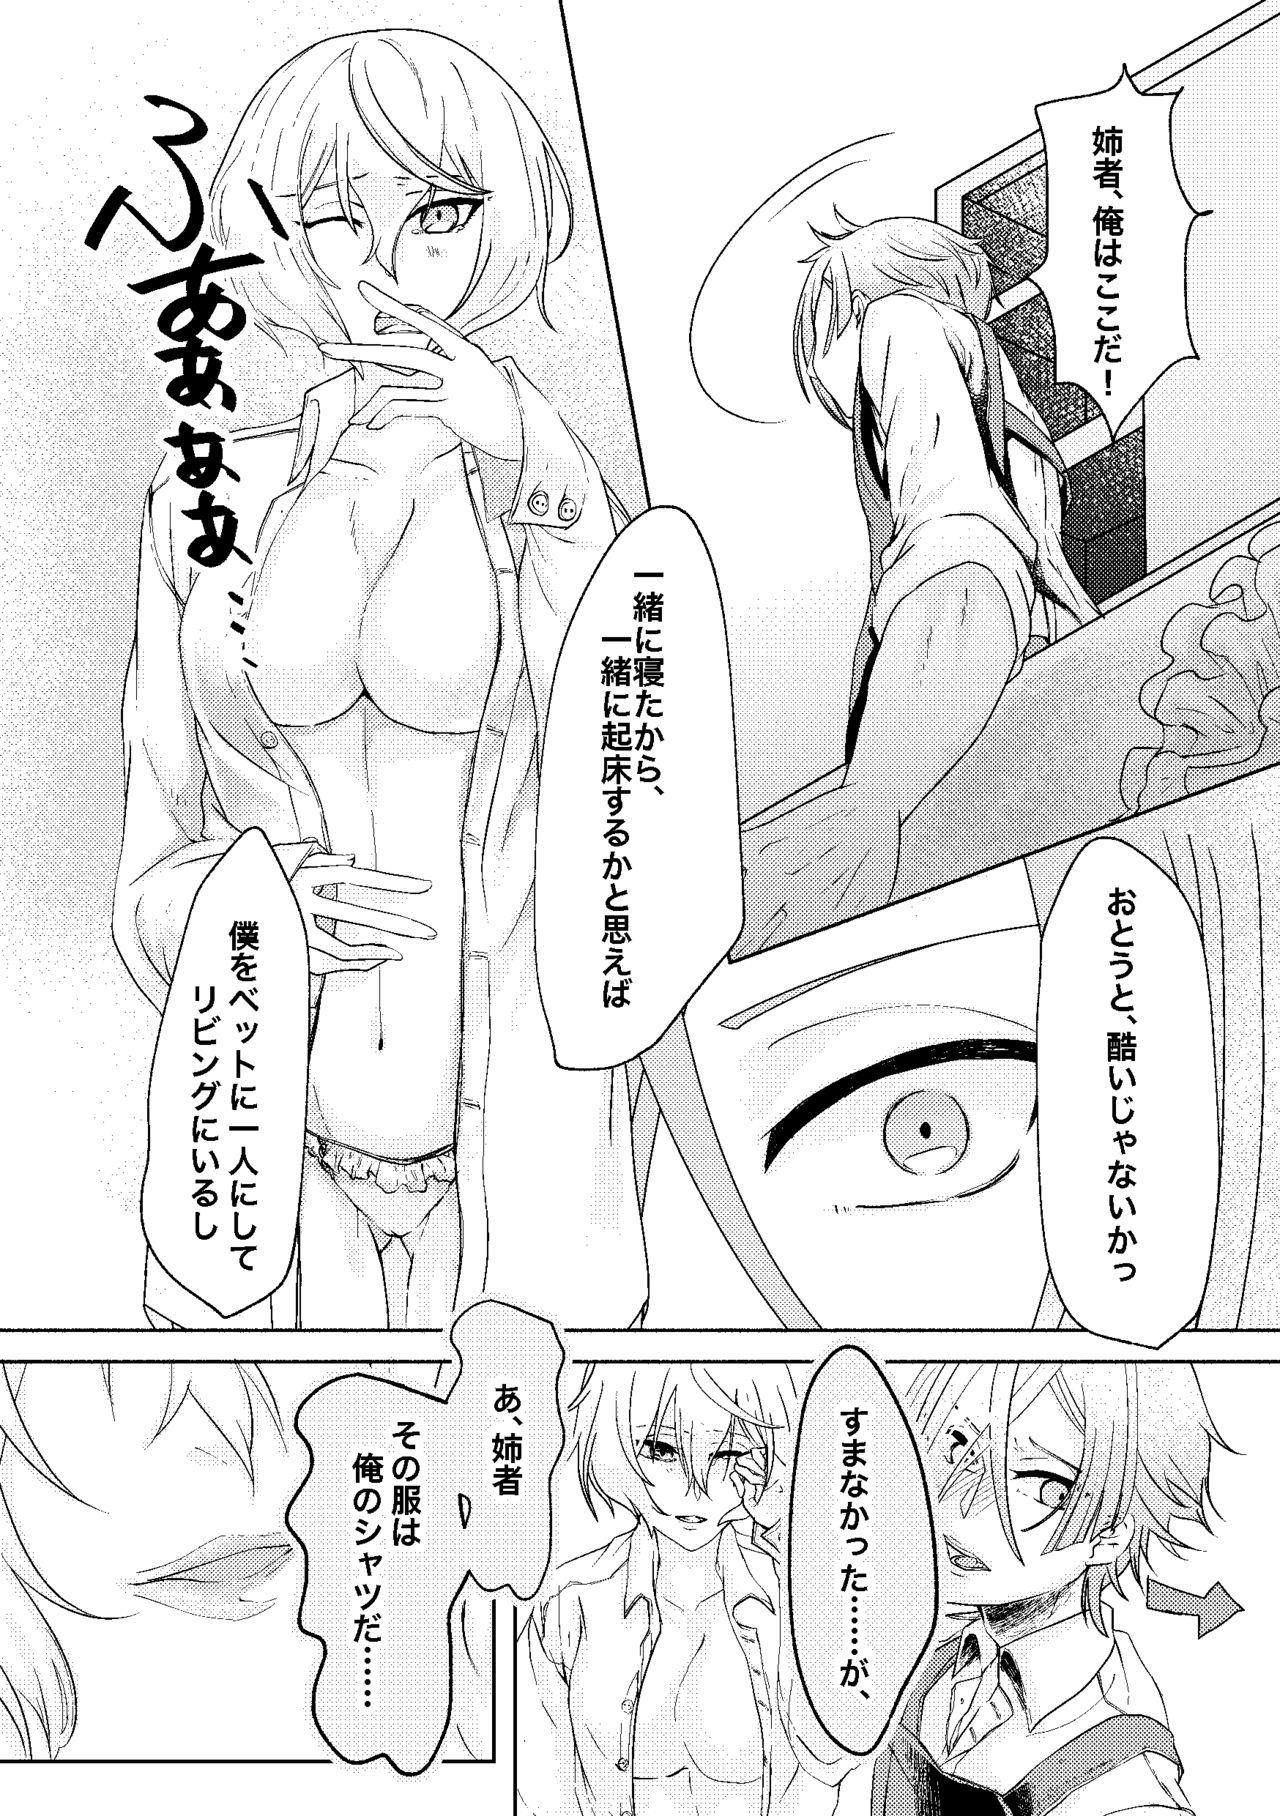 Lesbiansex 呼応する愛のすみか - Touken ranbu Romance - Page 7